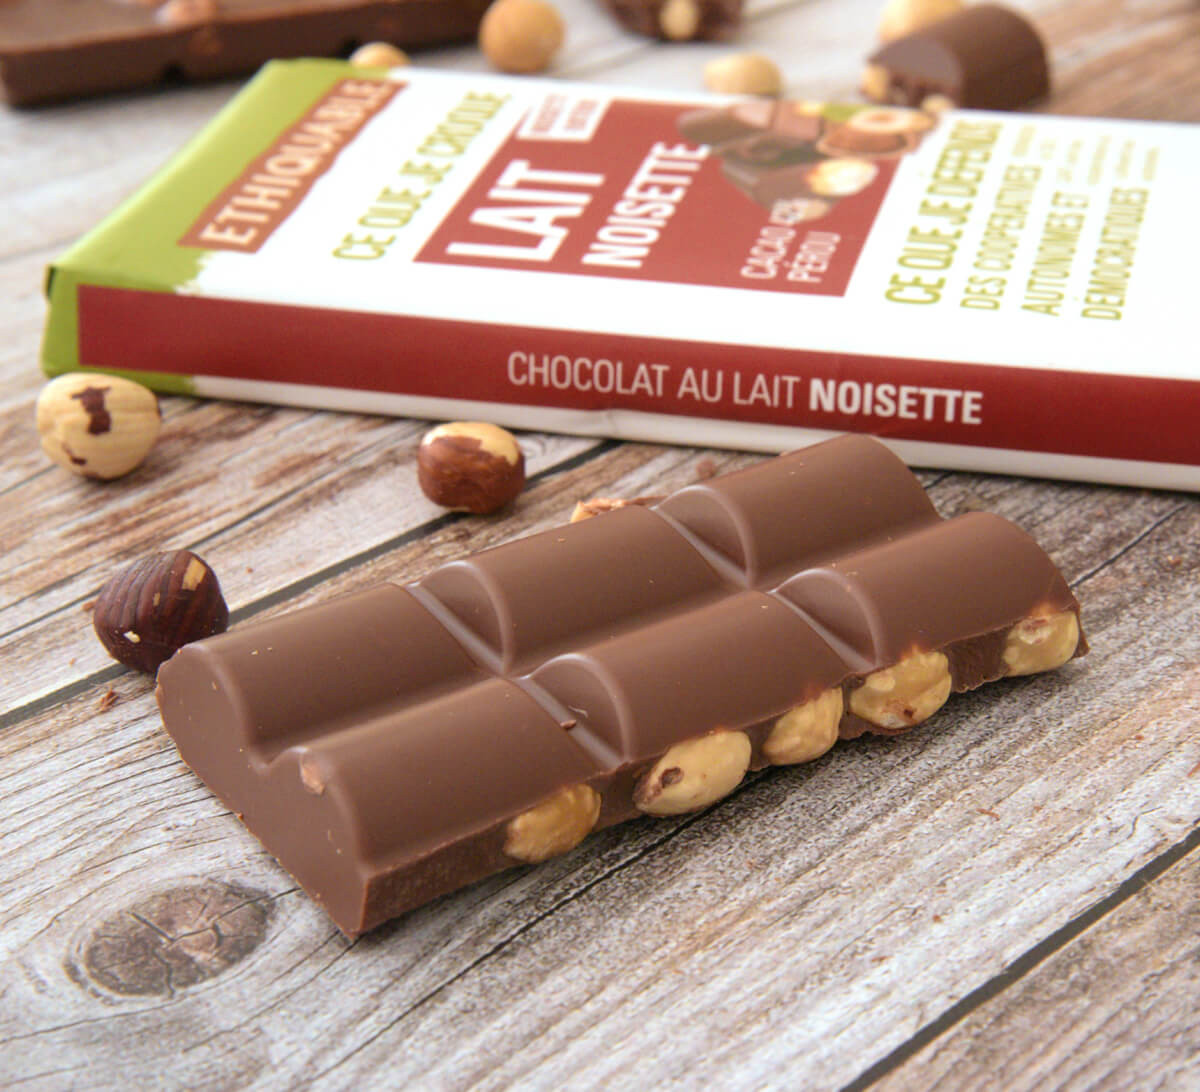 Noisette au chocolat au Lait 34% de cacao du Pays Basque